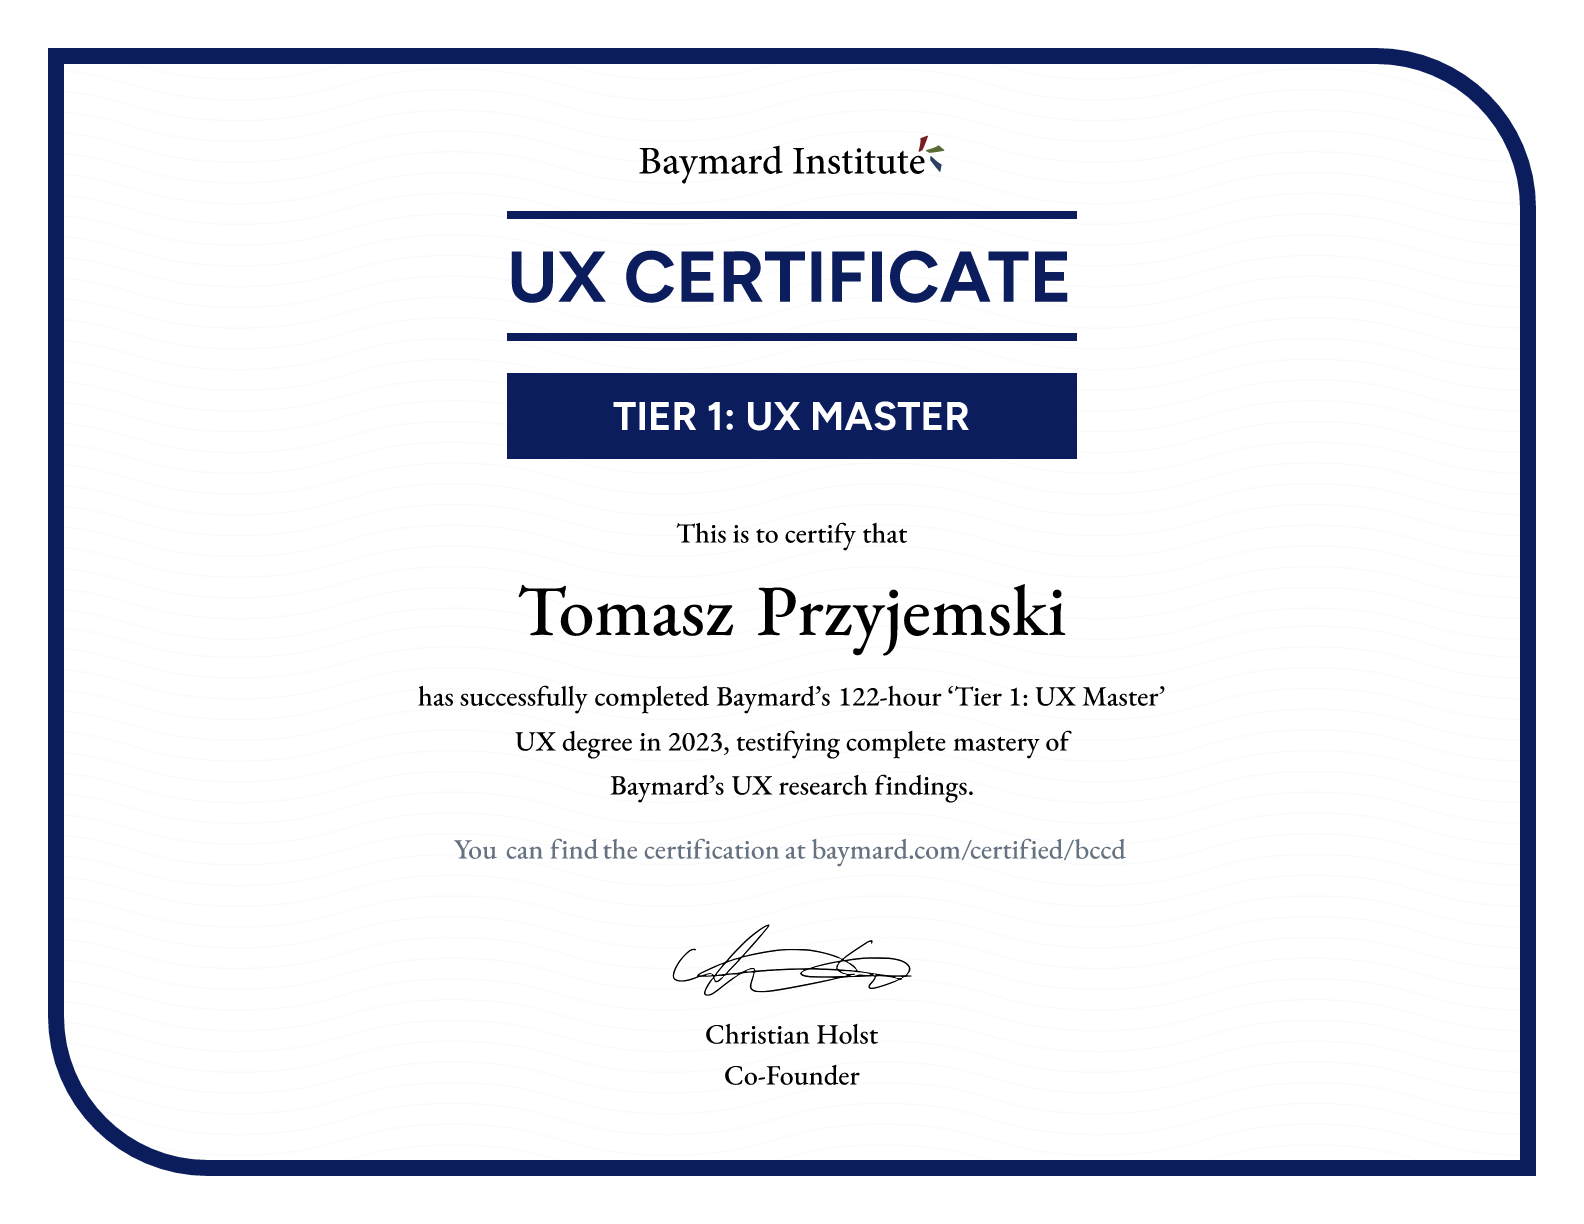 Tomasz Przyjemski’s certificate